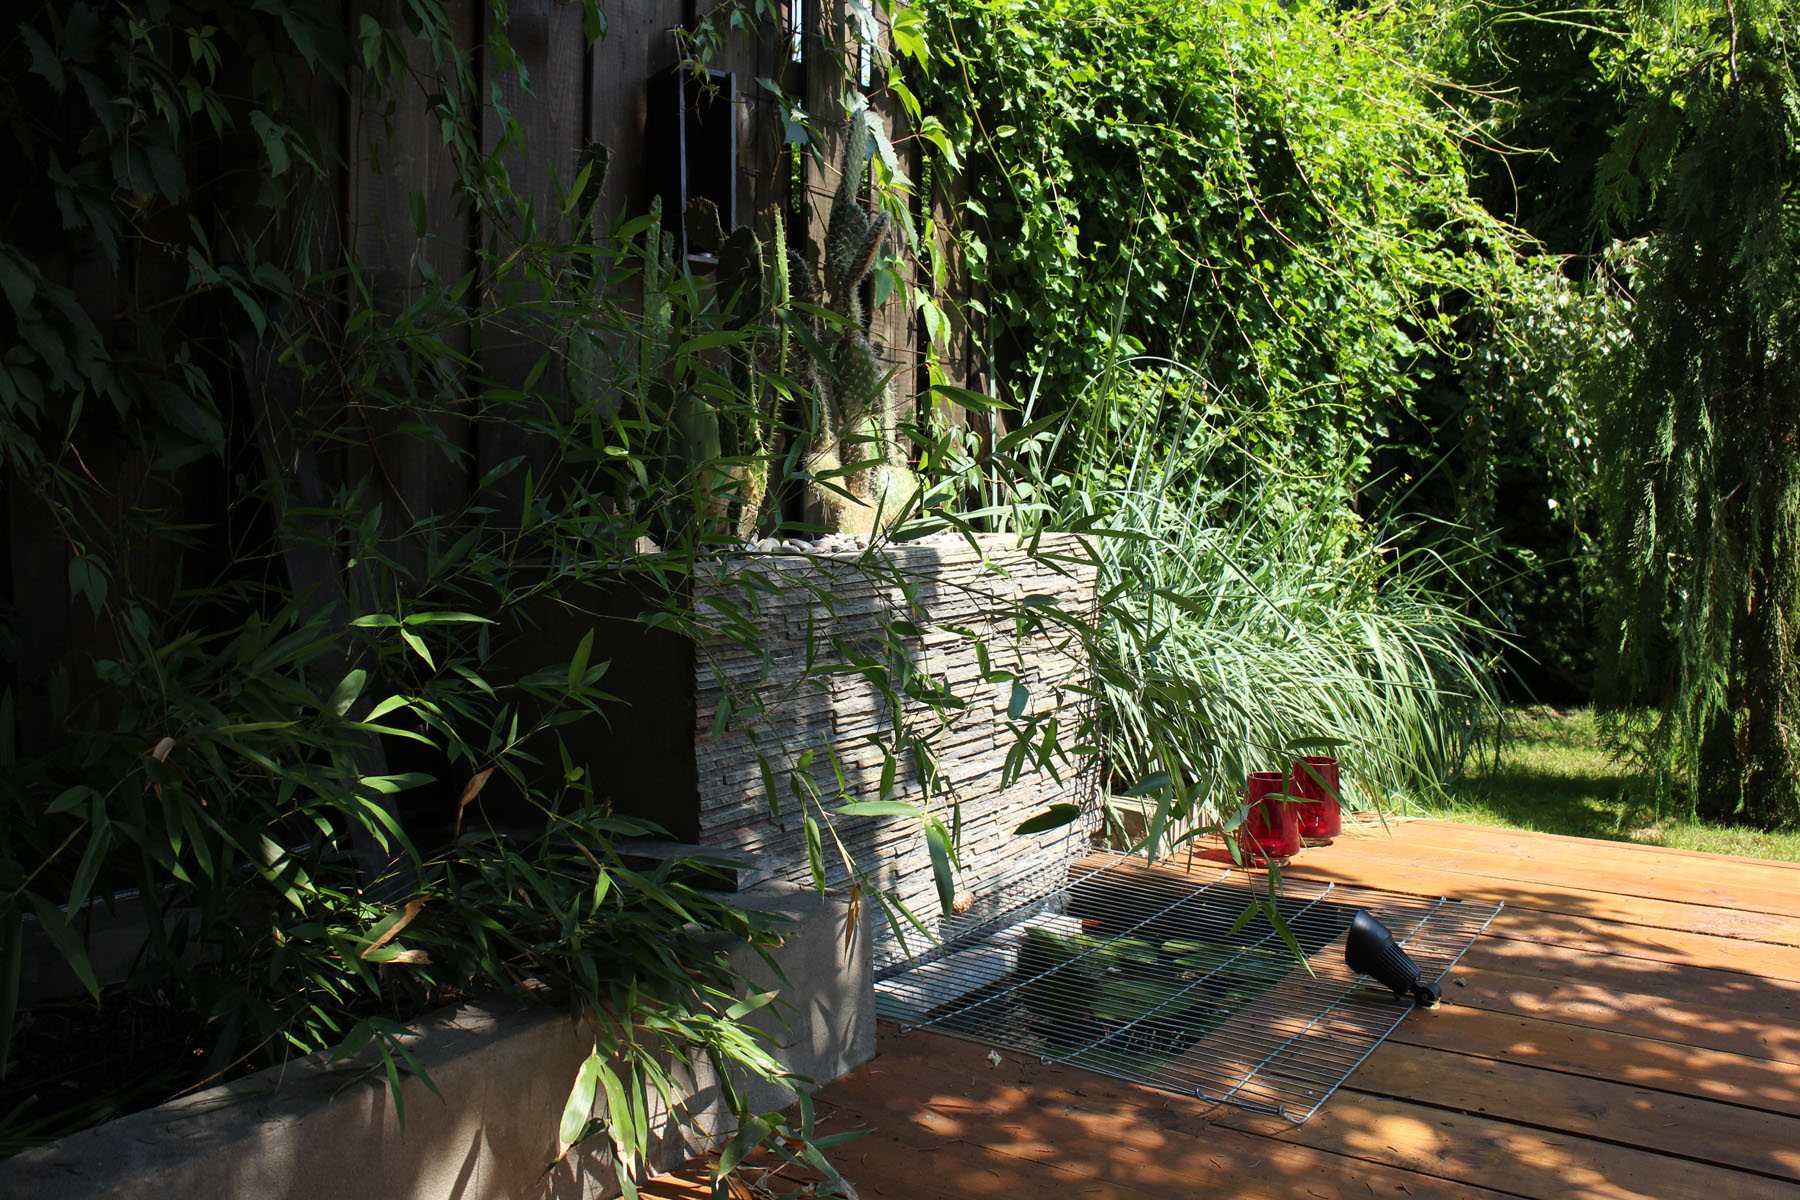 Bamus w ogrodzie Malowniczy ogród na Ochocie Strefa relaksu w miejskim ogrodzie Ogród jako drugi salon Wnętrze ogrodowe Dom i ogród Tras w ogrodzie Klimat w ogrodzie Oczko wodne